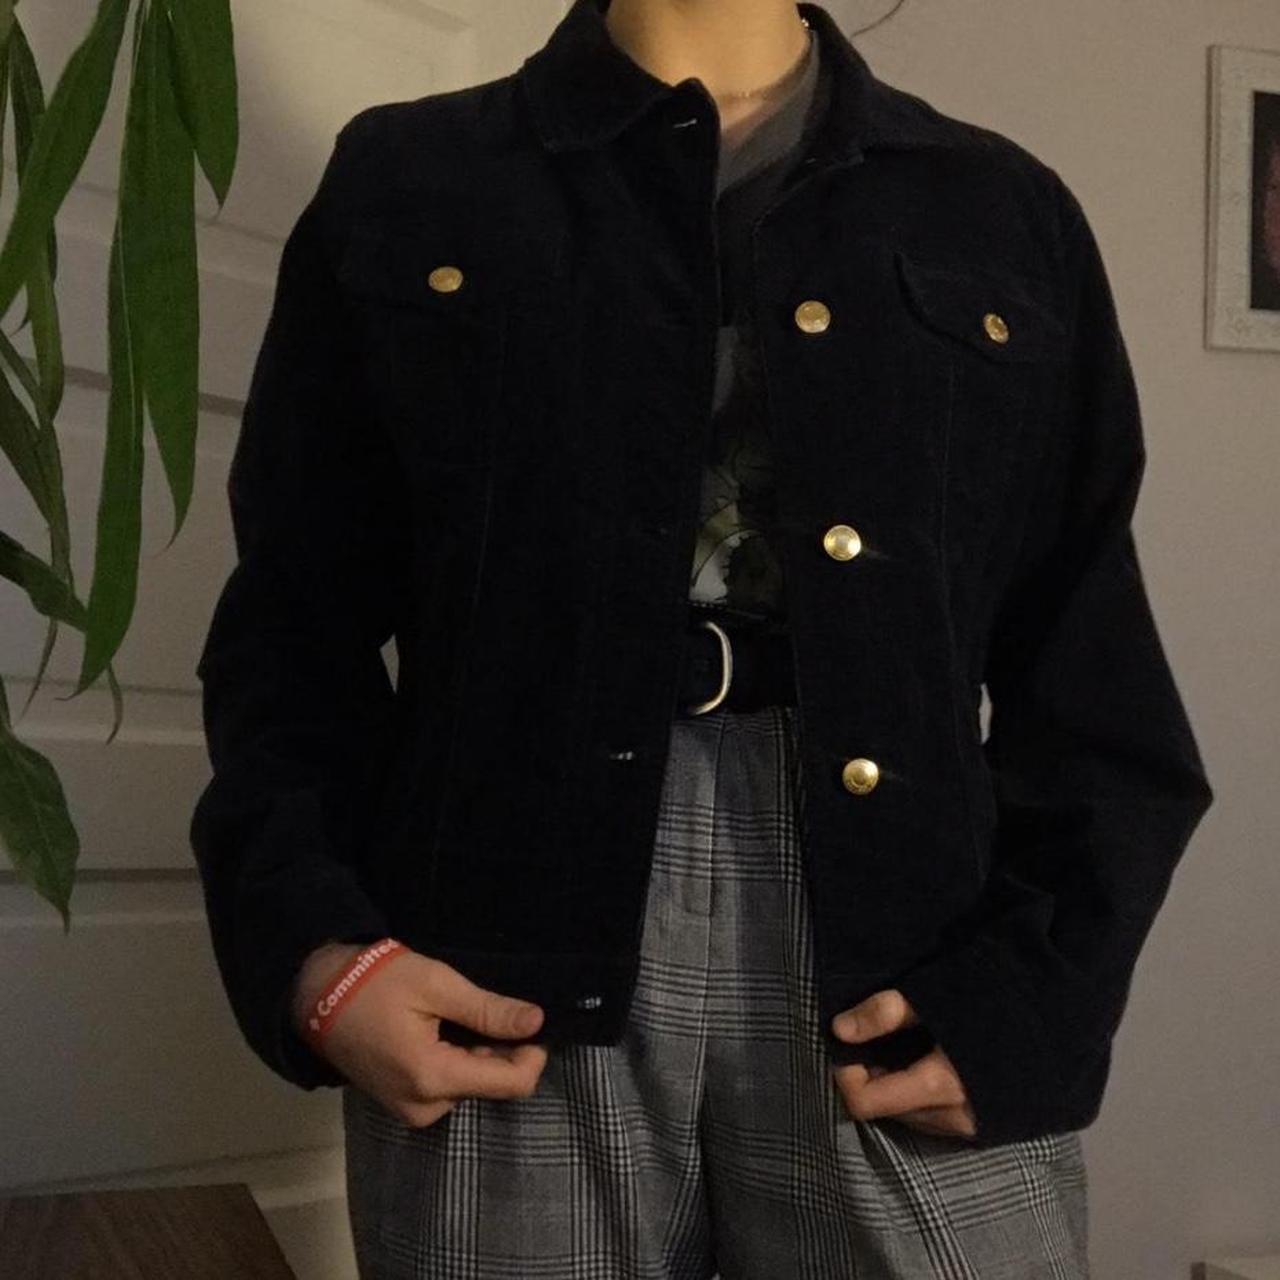 Ralph Lauren vintage navy corduroy jacket in great - Depop